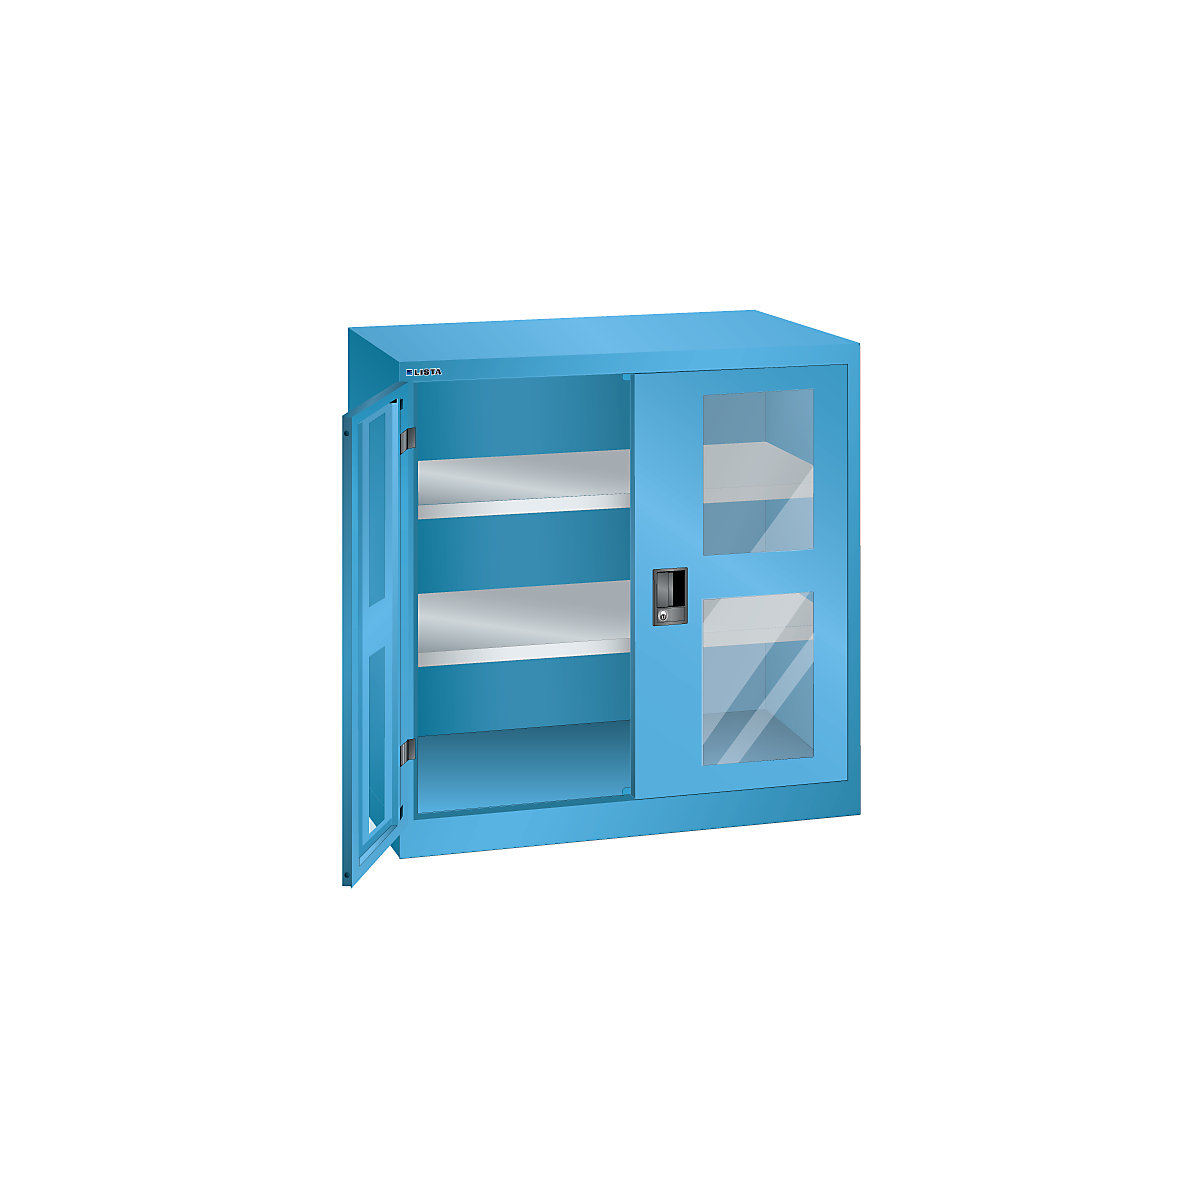 Szafa z drzwiami skrzydłowymi, 2 półki – LISTA, szer. 1000 mm, z okienkiem, jasnoniebieska-7